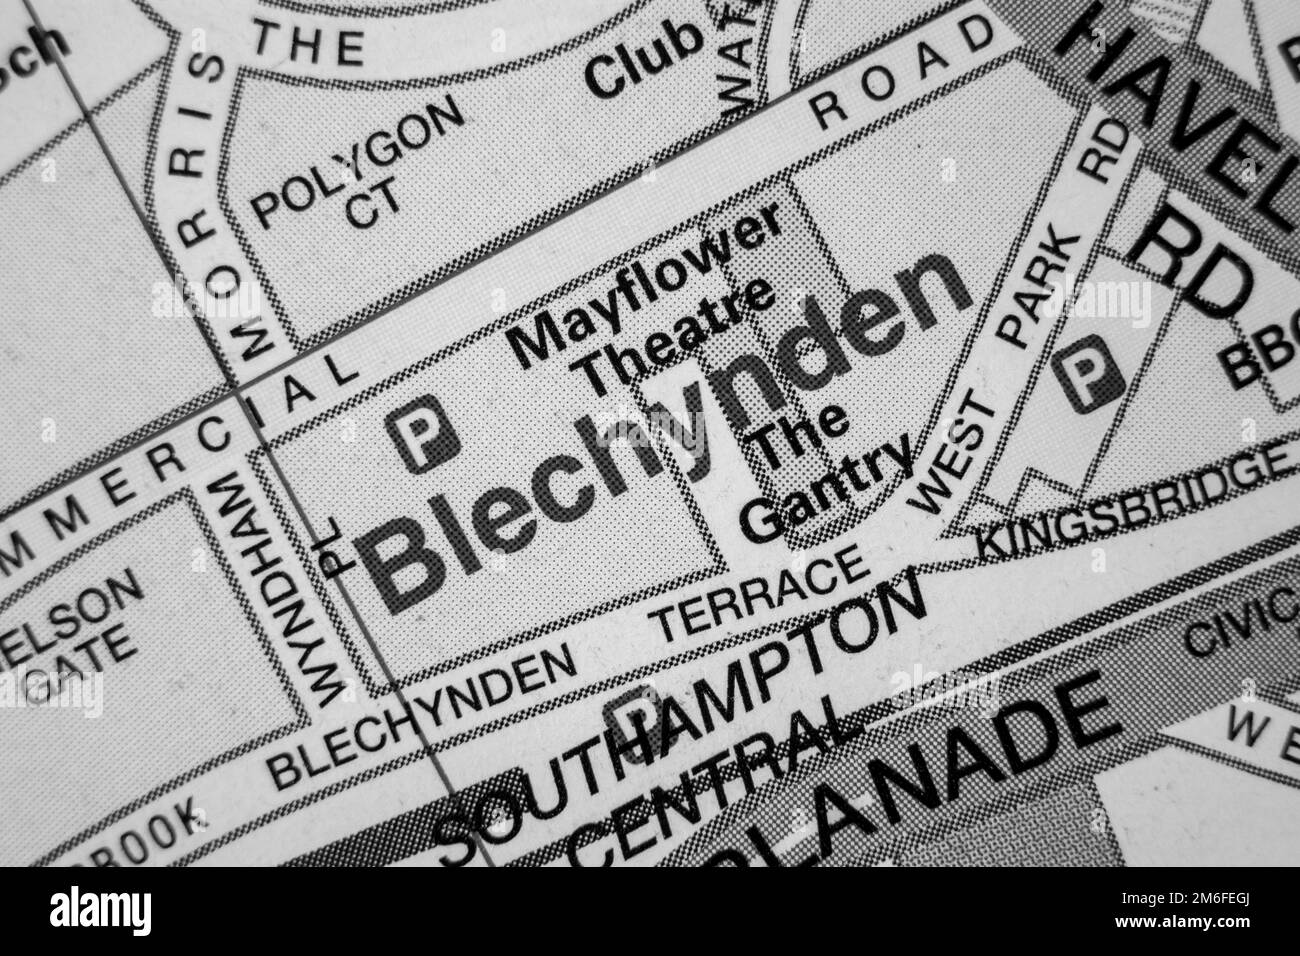 Blechynden Distrito de la ciudad portuaria de Southampton, Hampshire, Reino Unido atlas mapa nombre de la ciudad - blanco y negro Foto de stock